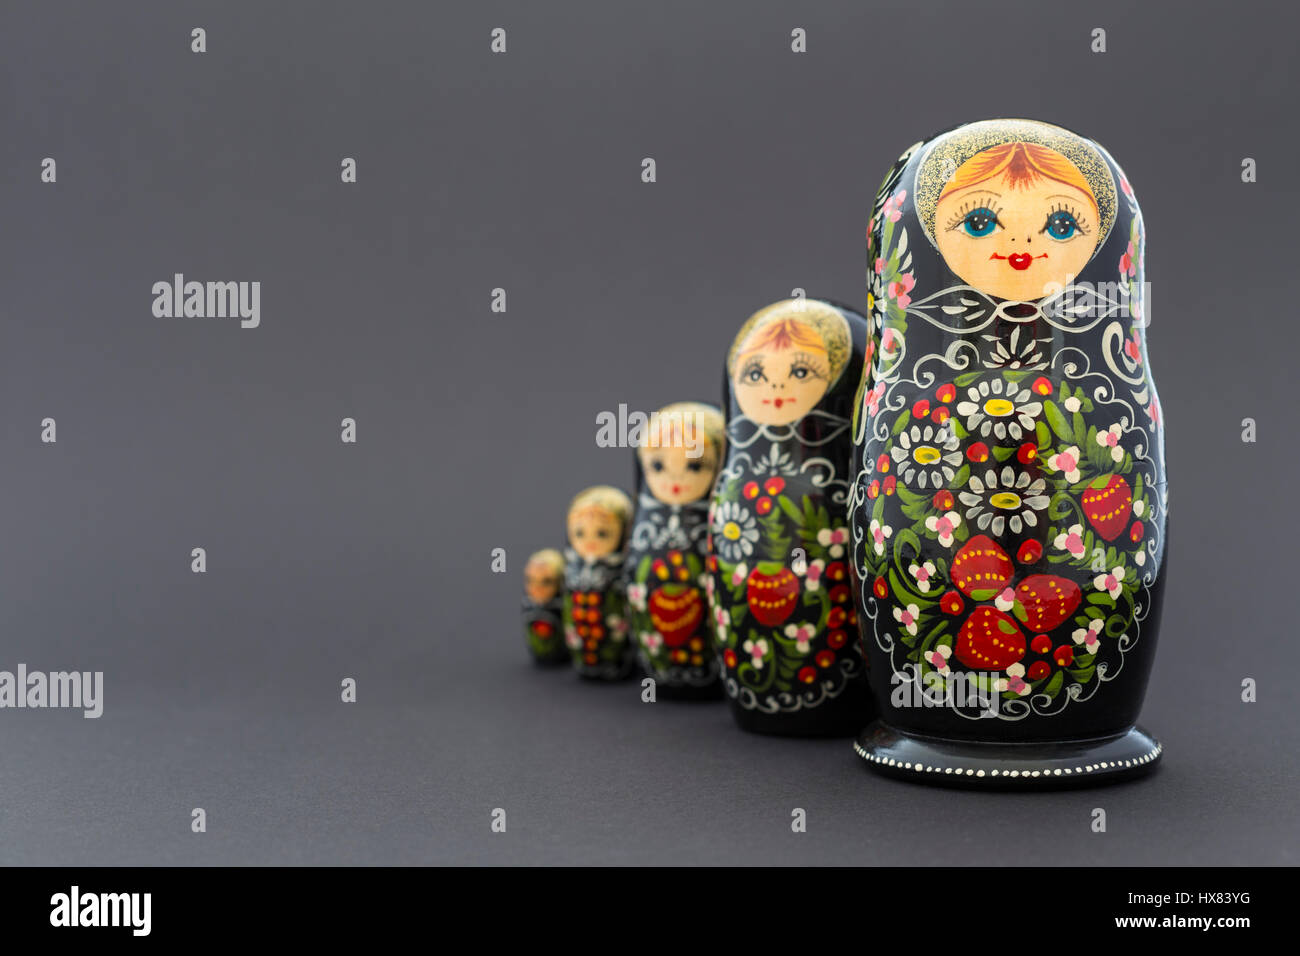 Schöne schwarze russische Verschachtelung Puppen (Matroschka Puppen) mit  weißen, grünen und roten Anstrich vor dunklem Hintergrund Stockfotografie -  Alamy